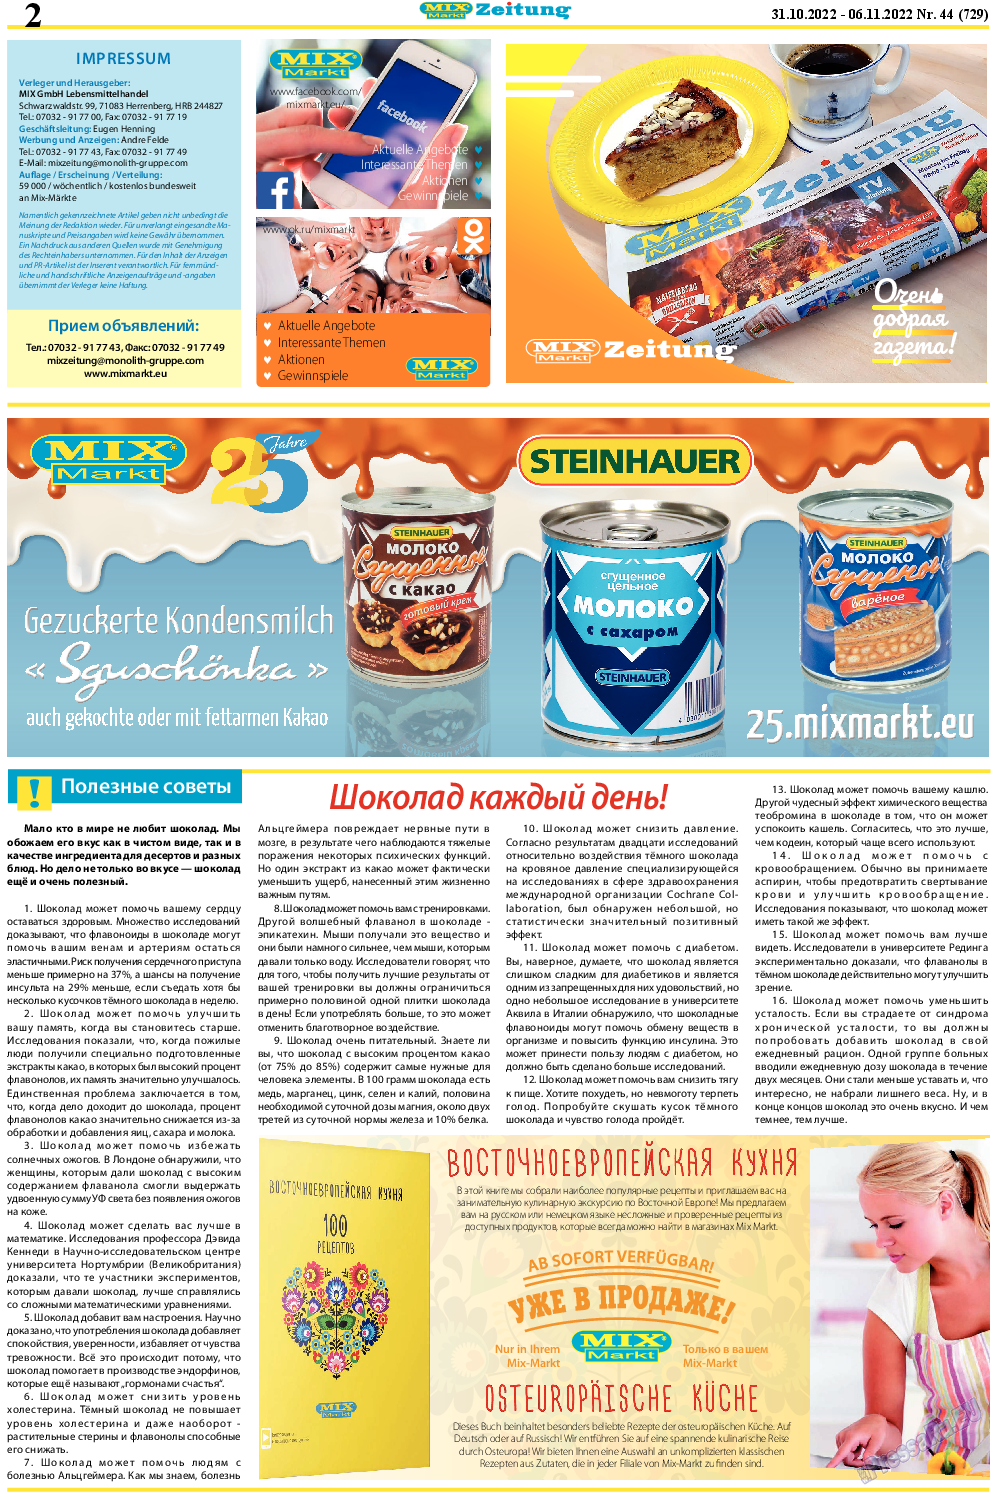 MIX-Markt Zeitung, газета. 2022 №44 стр.2